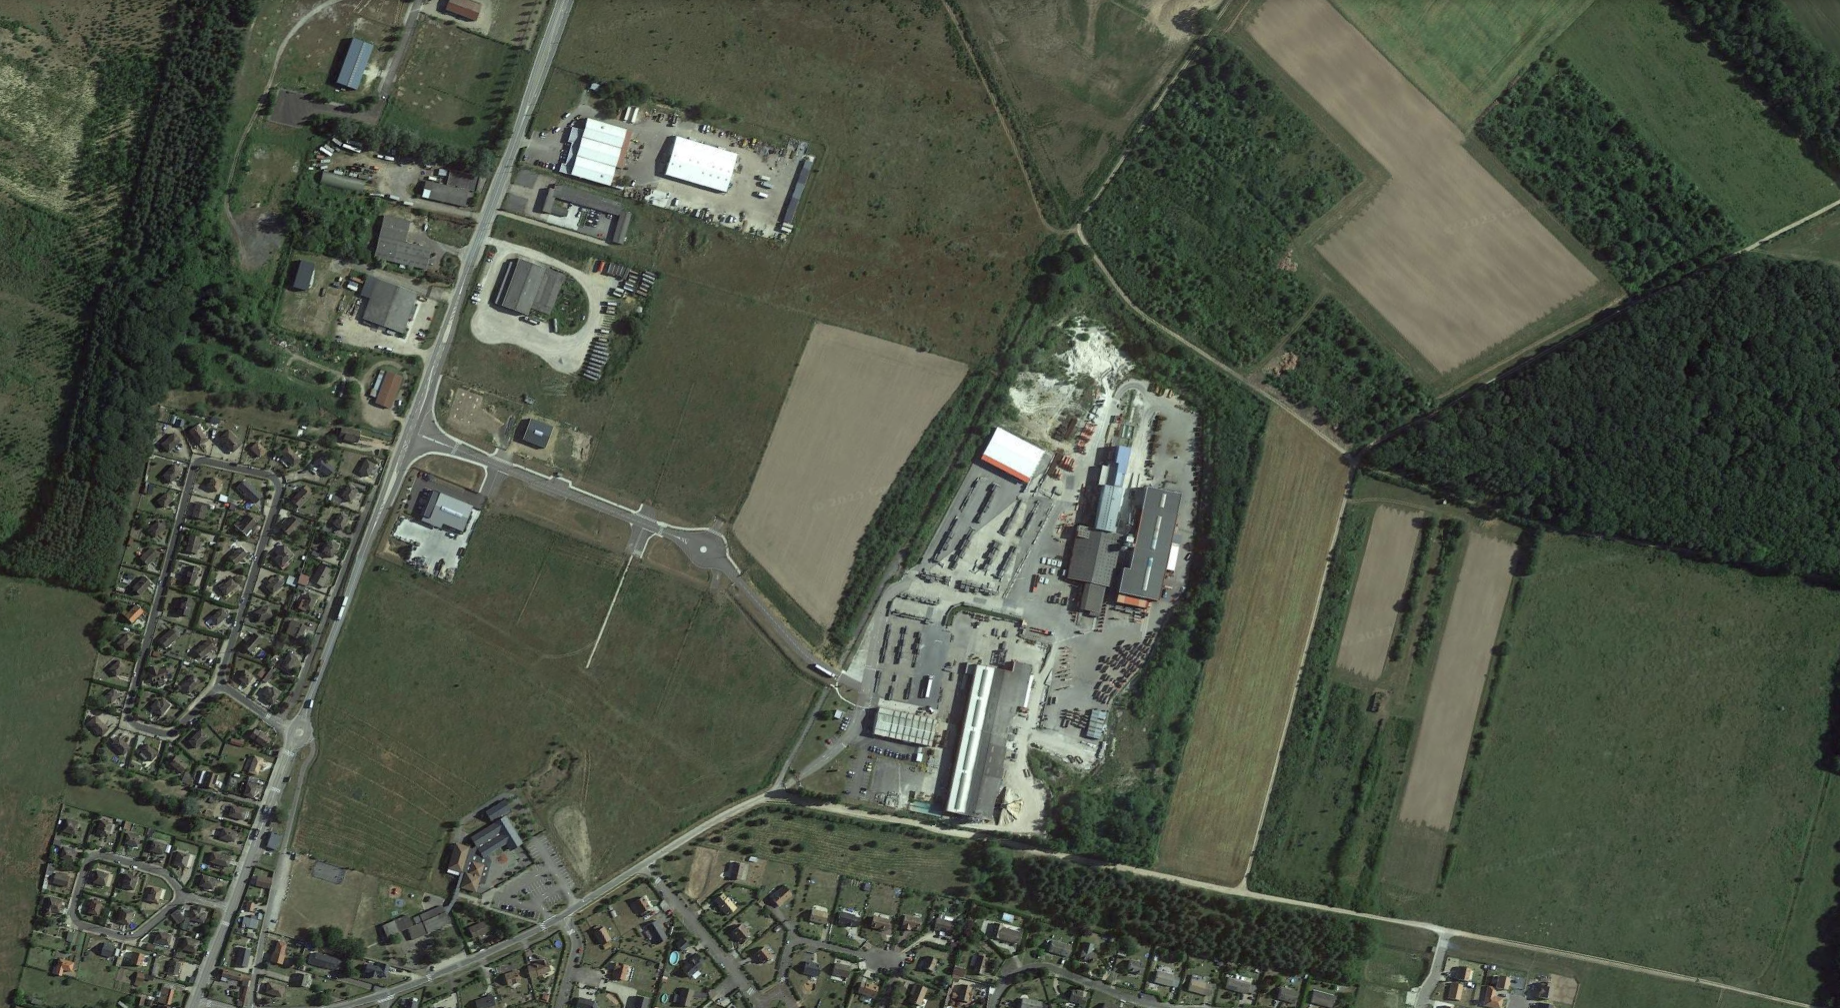 Zone d'activités Trou à Crillon - Commune de Courcelles-sur-Seine ©Google Earth